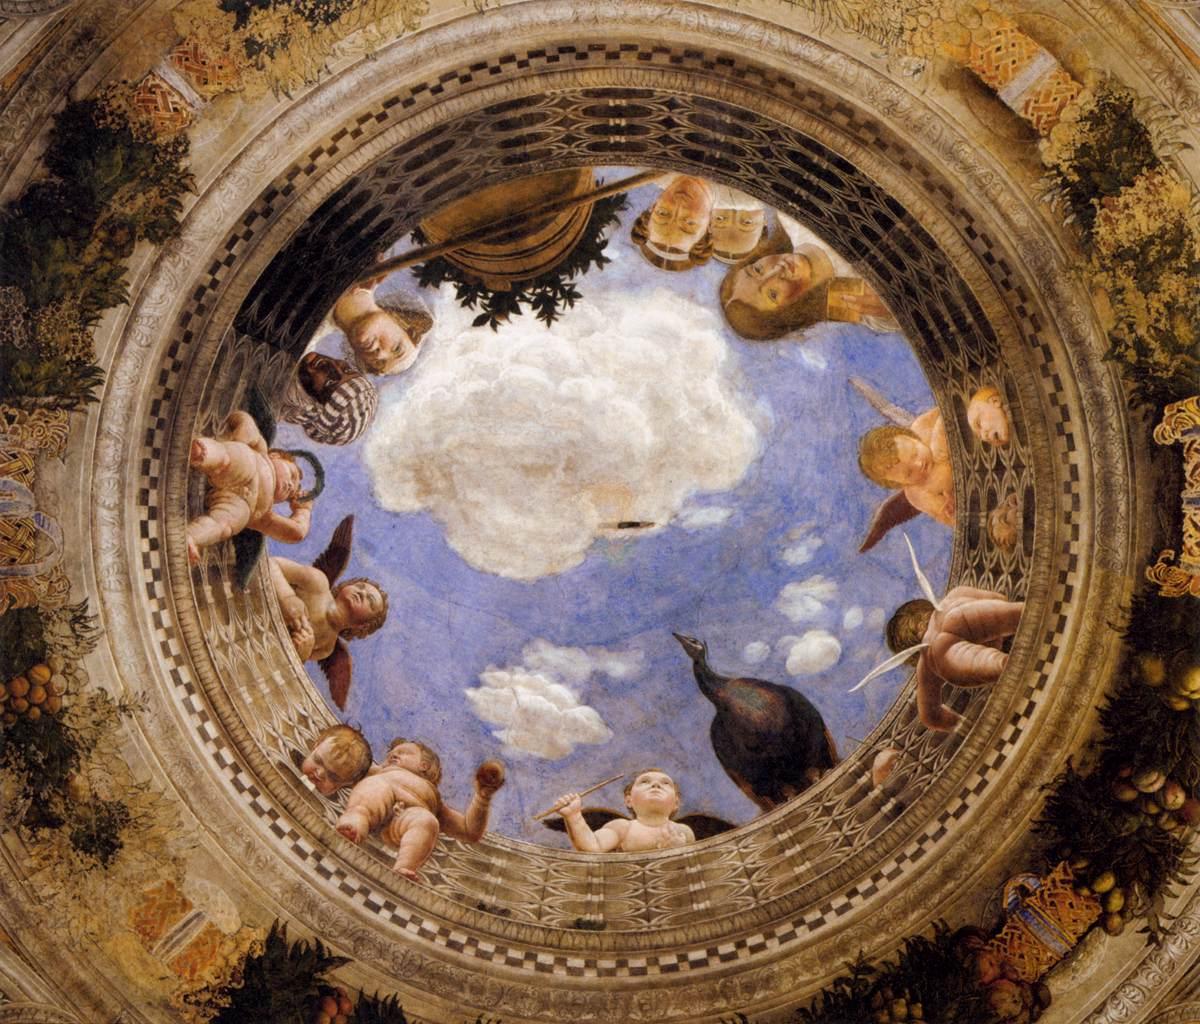 意大利文艺复兴名家:安德烈亚·曼特尼亚(1)曼图亚公爵府婚礼堂壁画